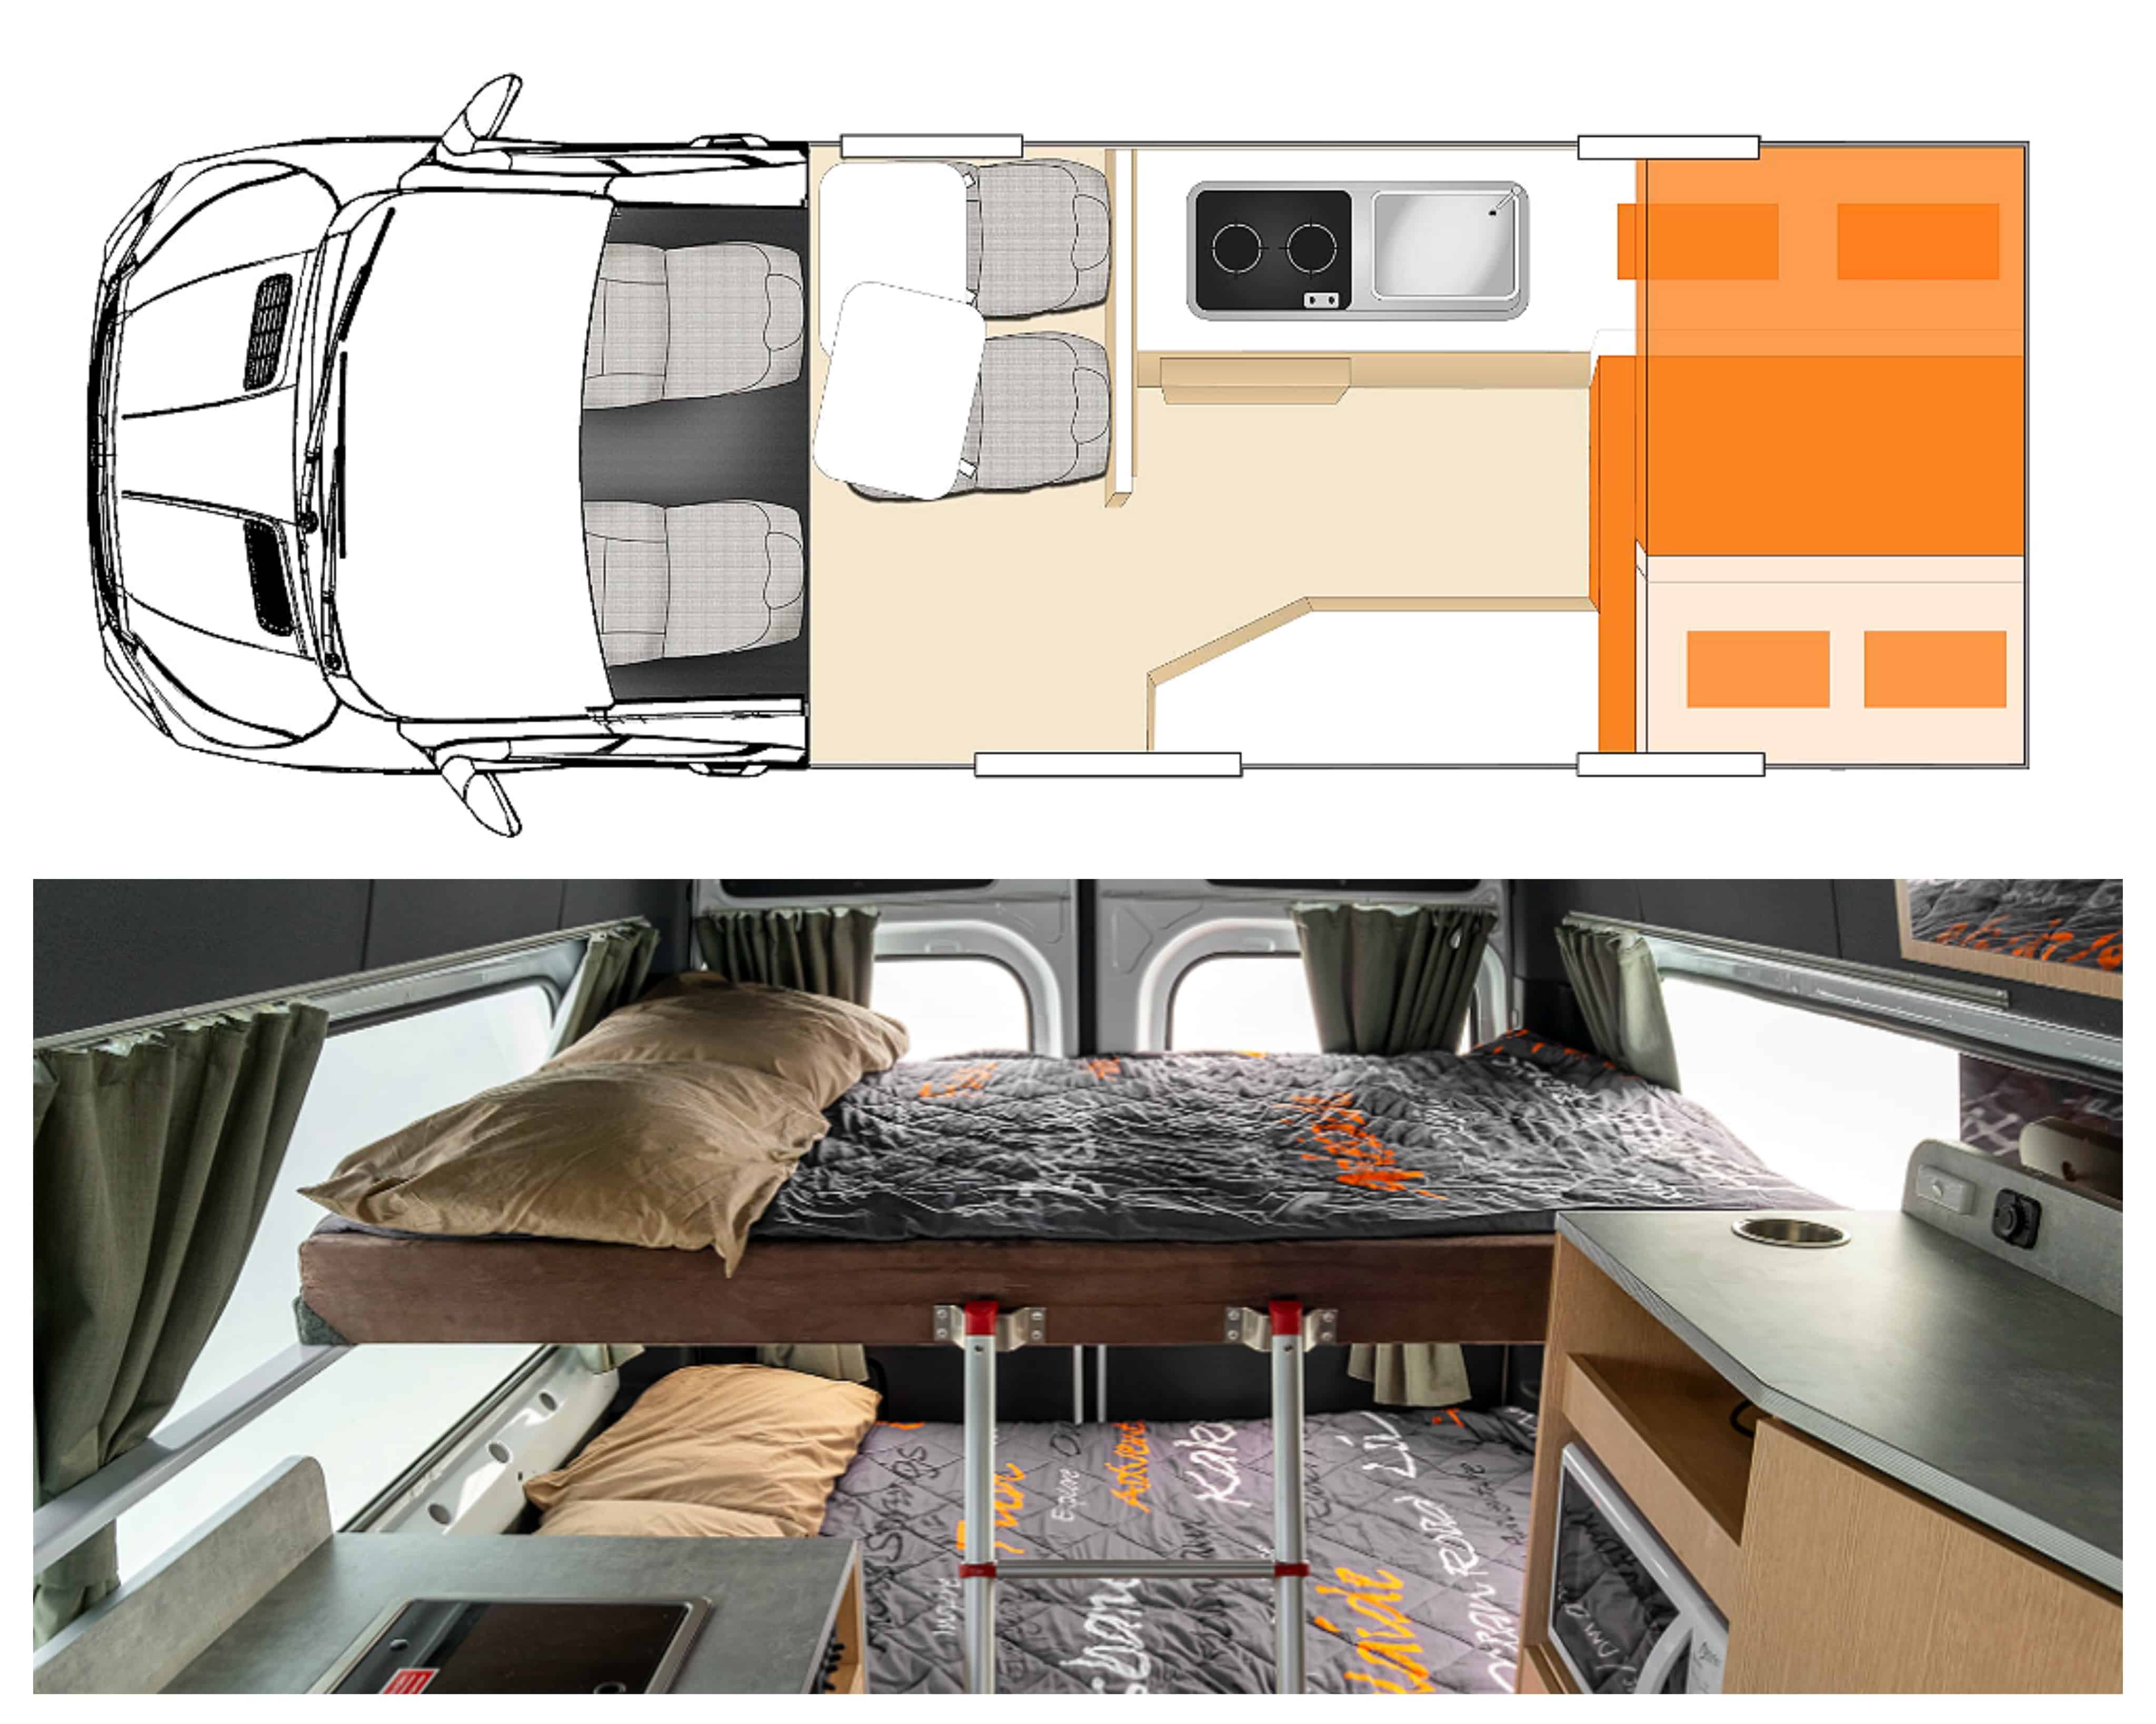 Plan et photo intérieur van modèle Apollo Endeavour Camper en Australie